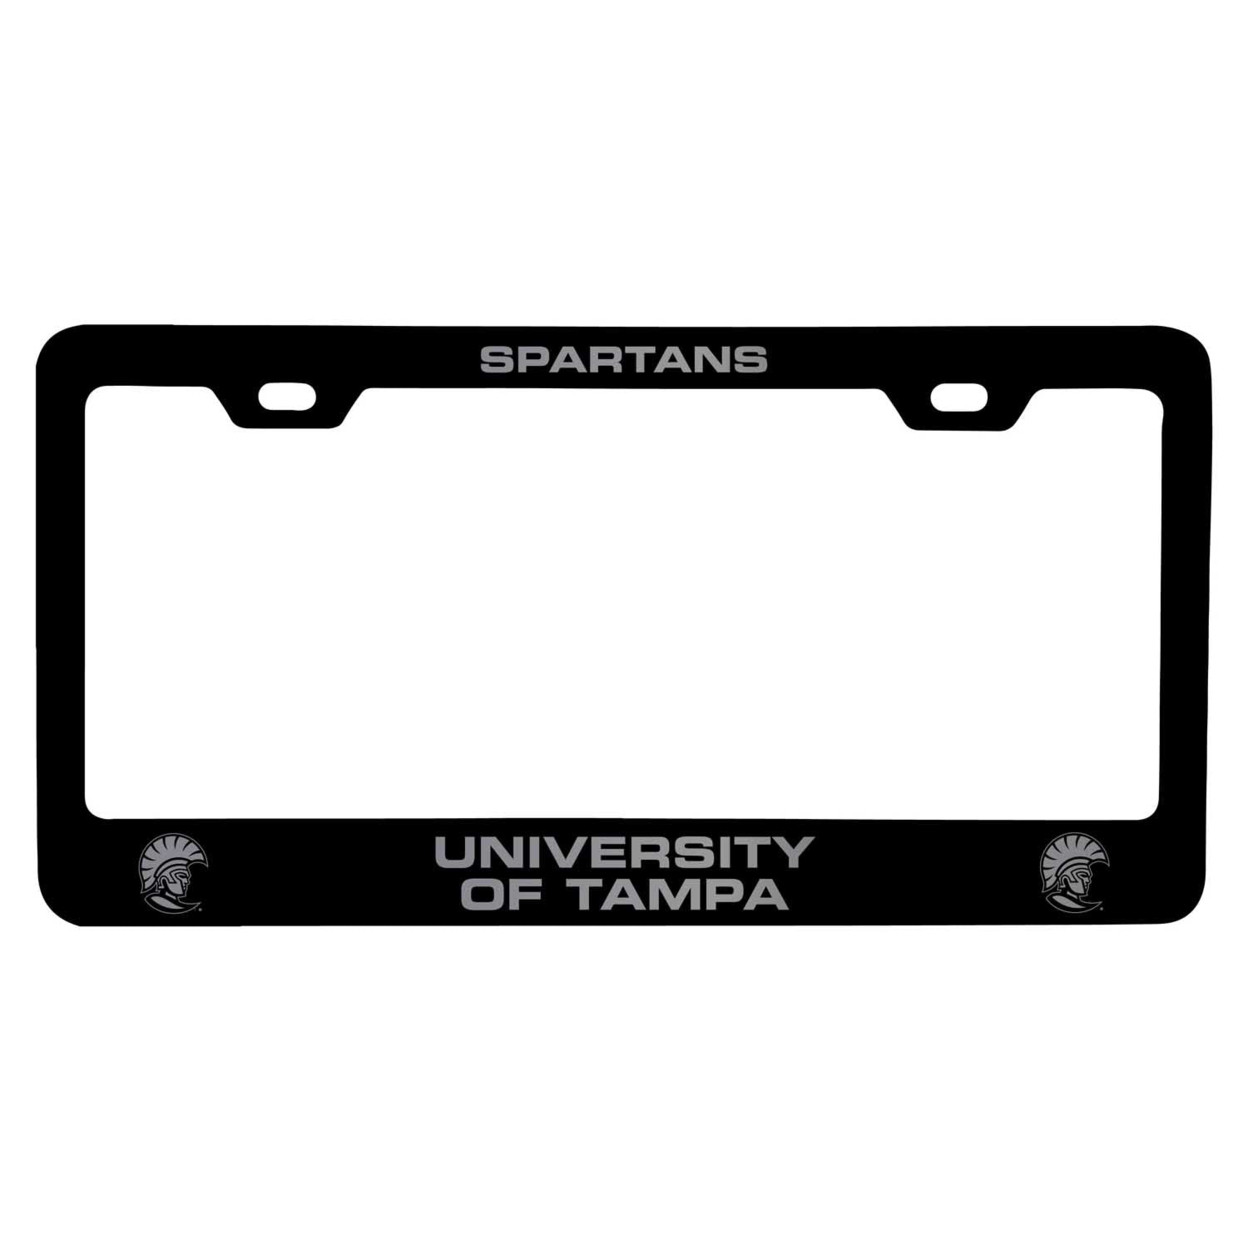 University Of Tampa Spartans Laser Engraved Metal License Plate Frame - Choose Your Color - Black